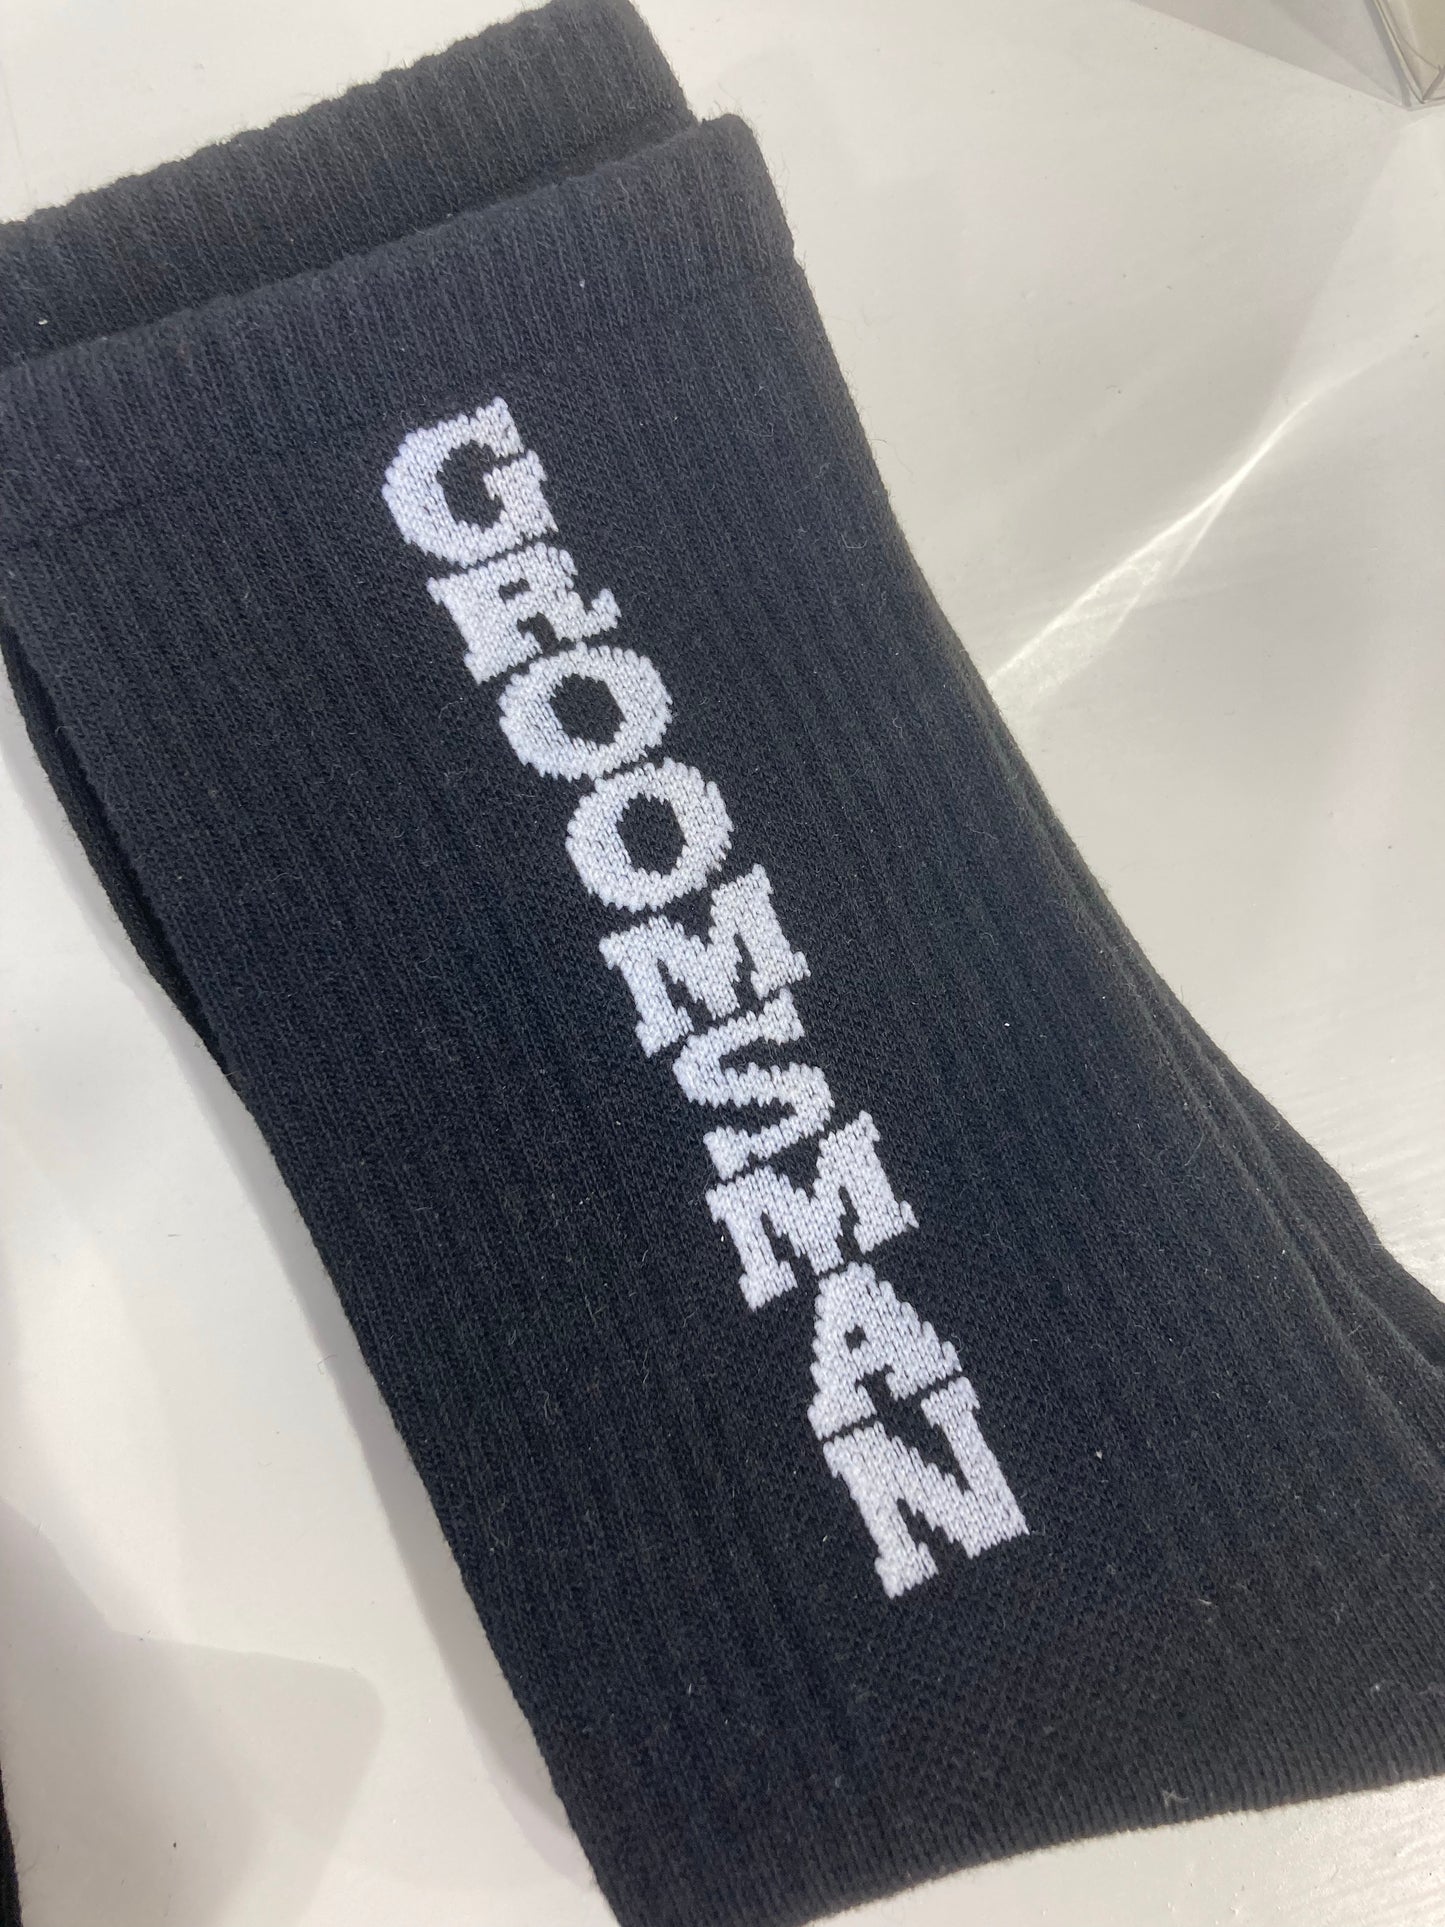 Groomsman socks